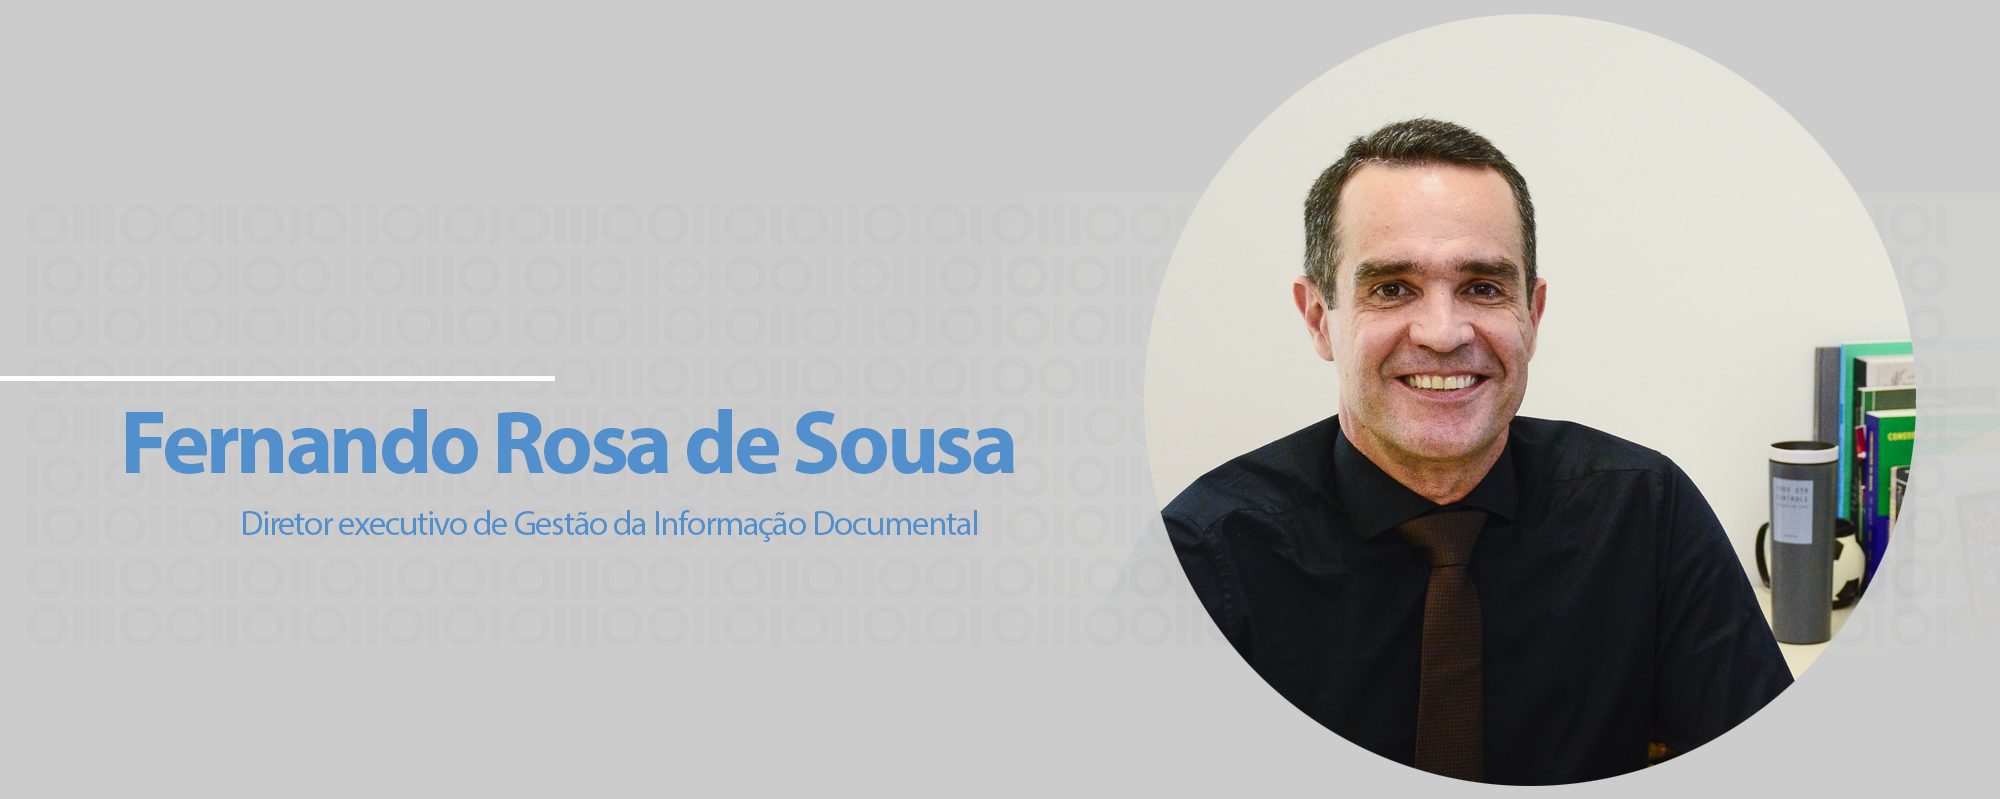 Fernando Rosa de Sousa, diretor executivo de Gestão da Informação Documental.